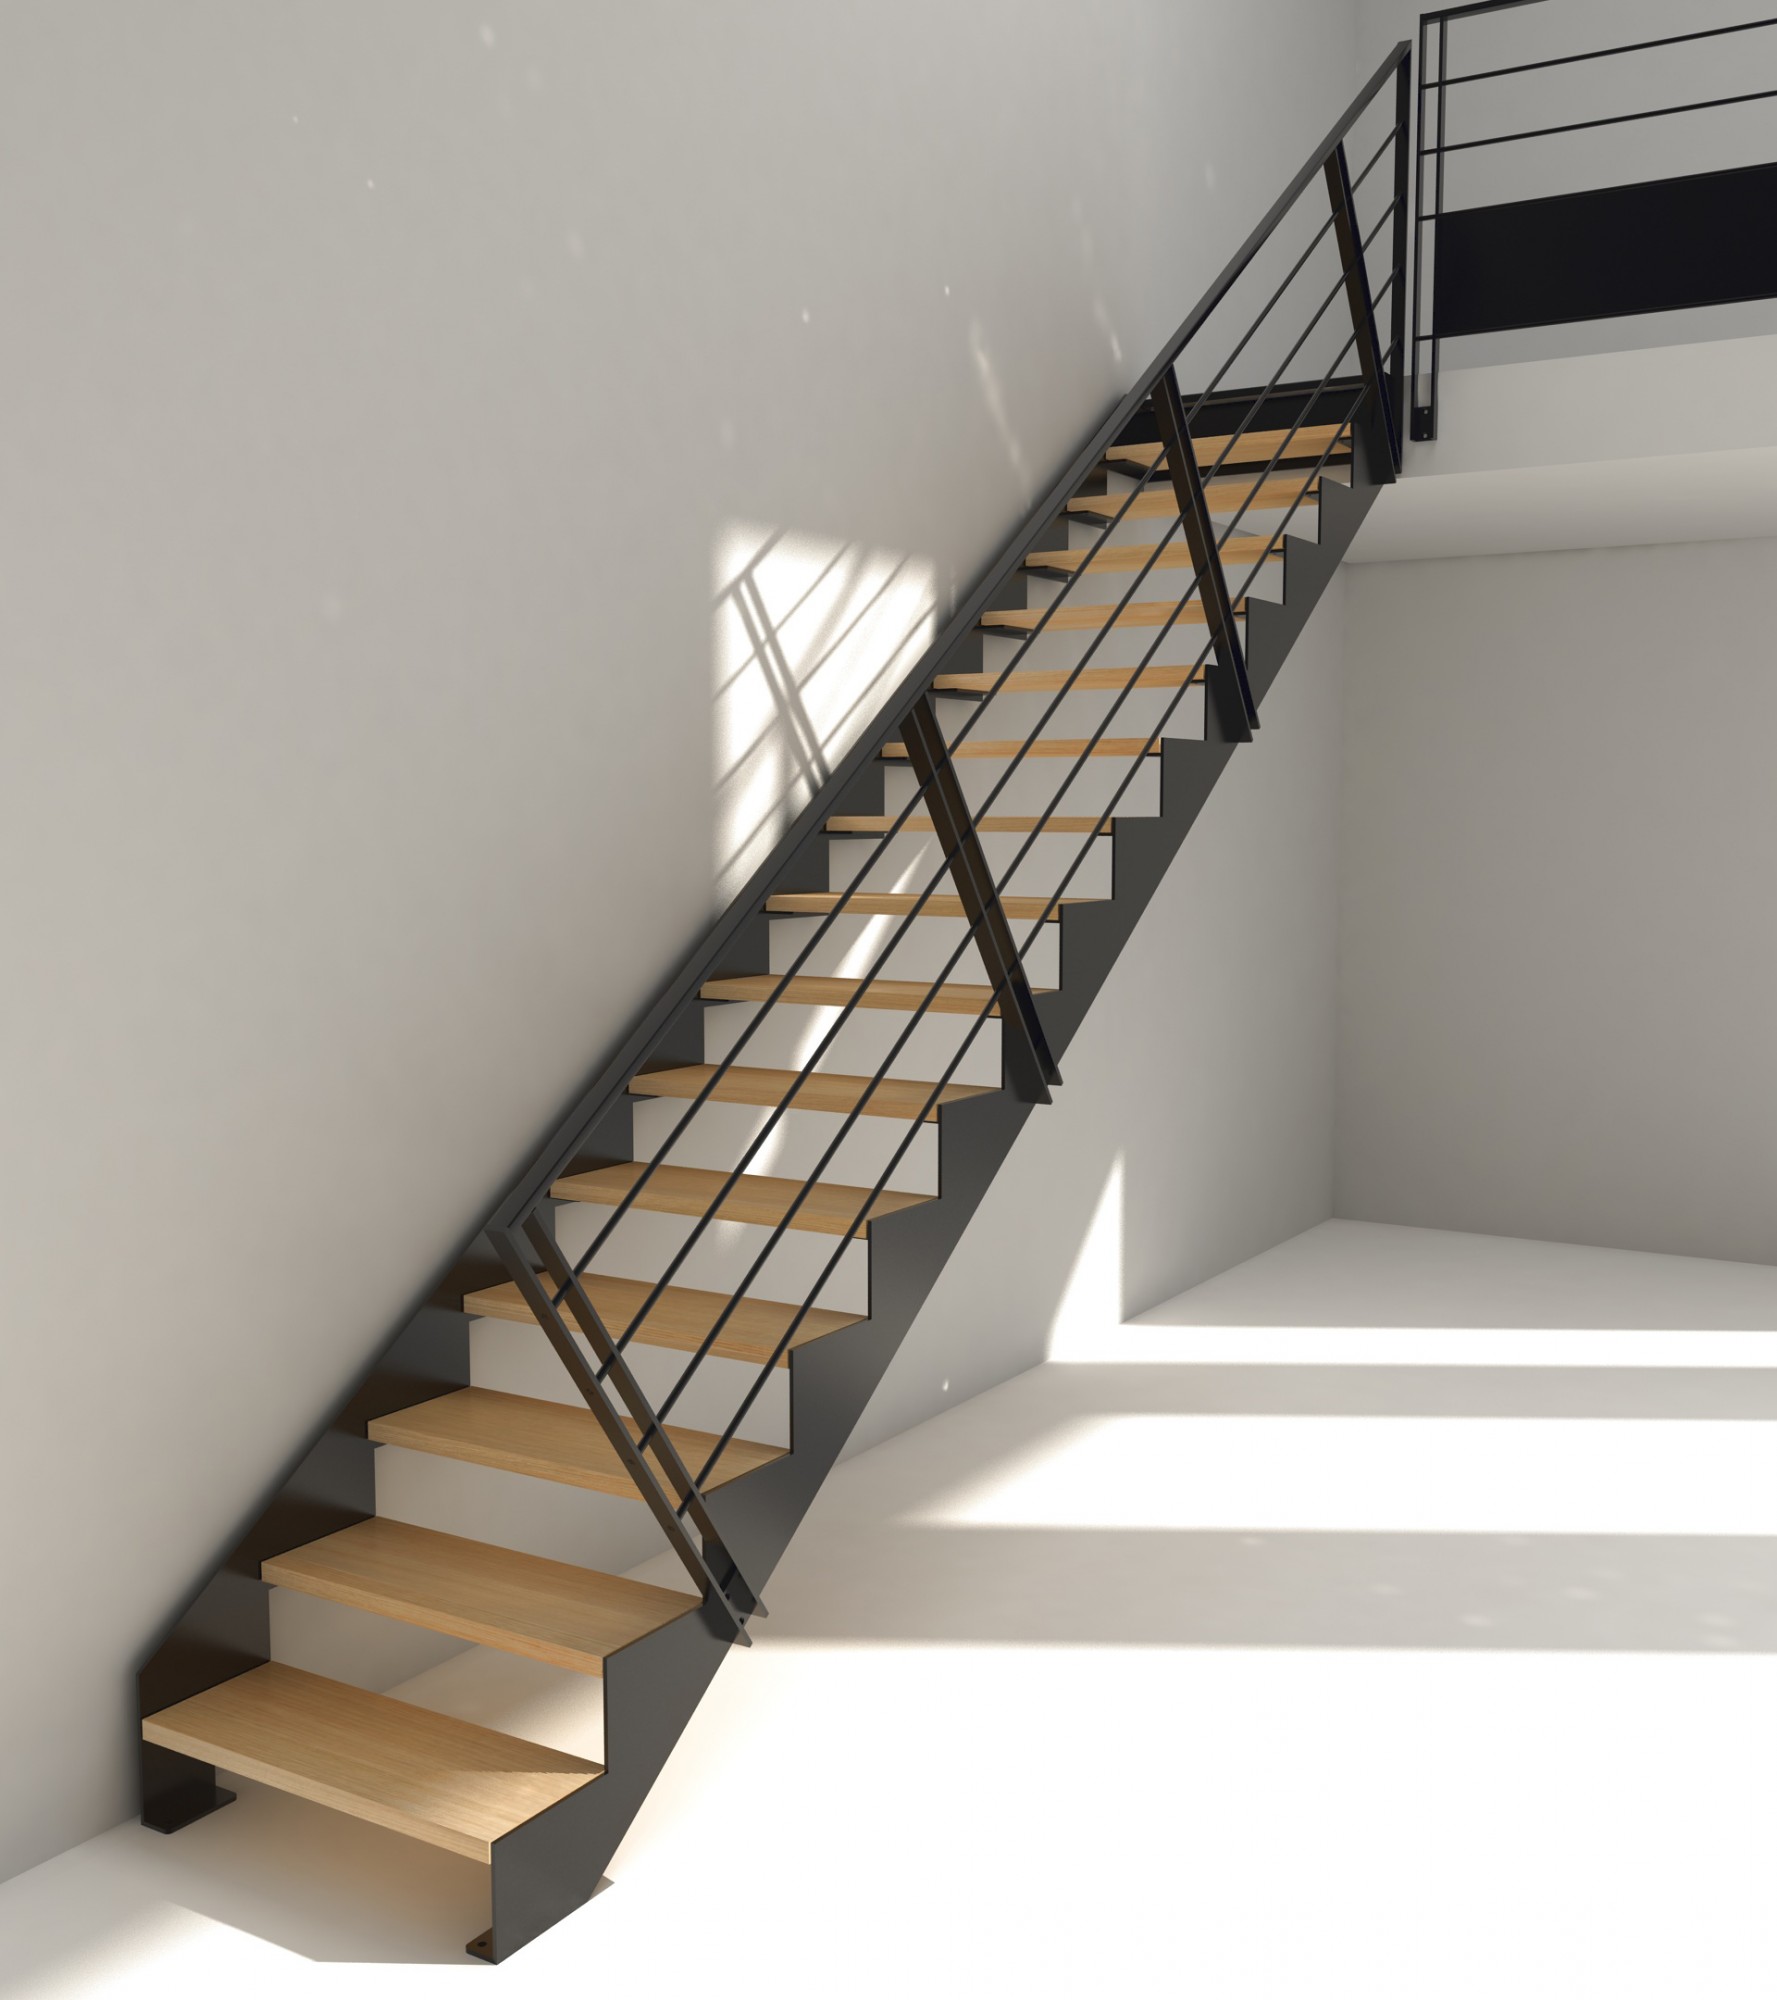 Acheter un escalier design à monter soi-même